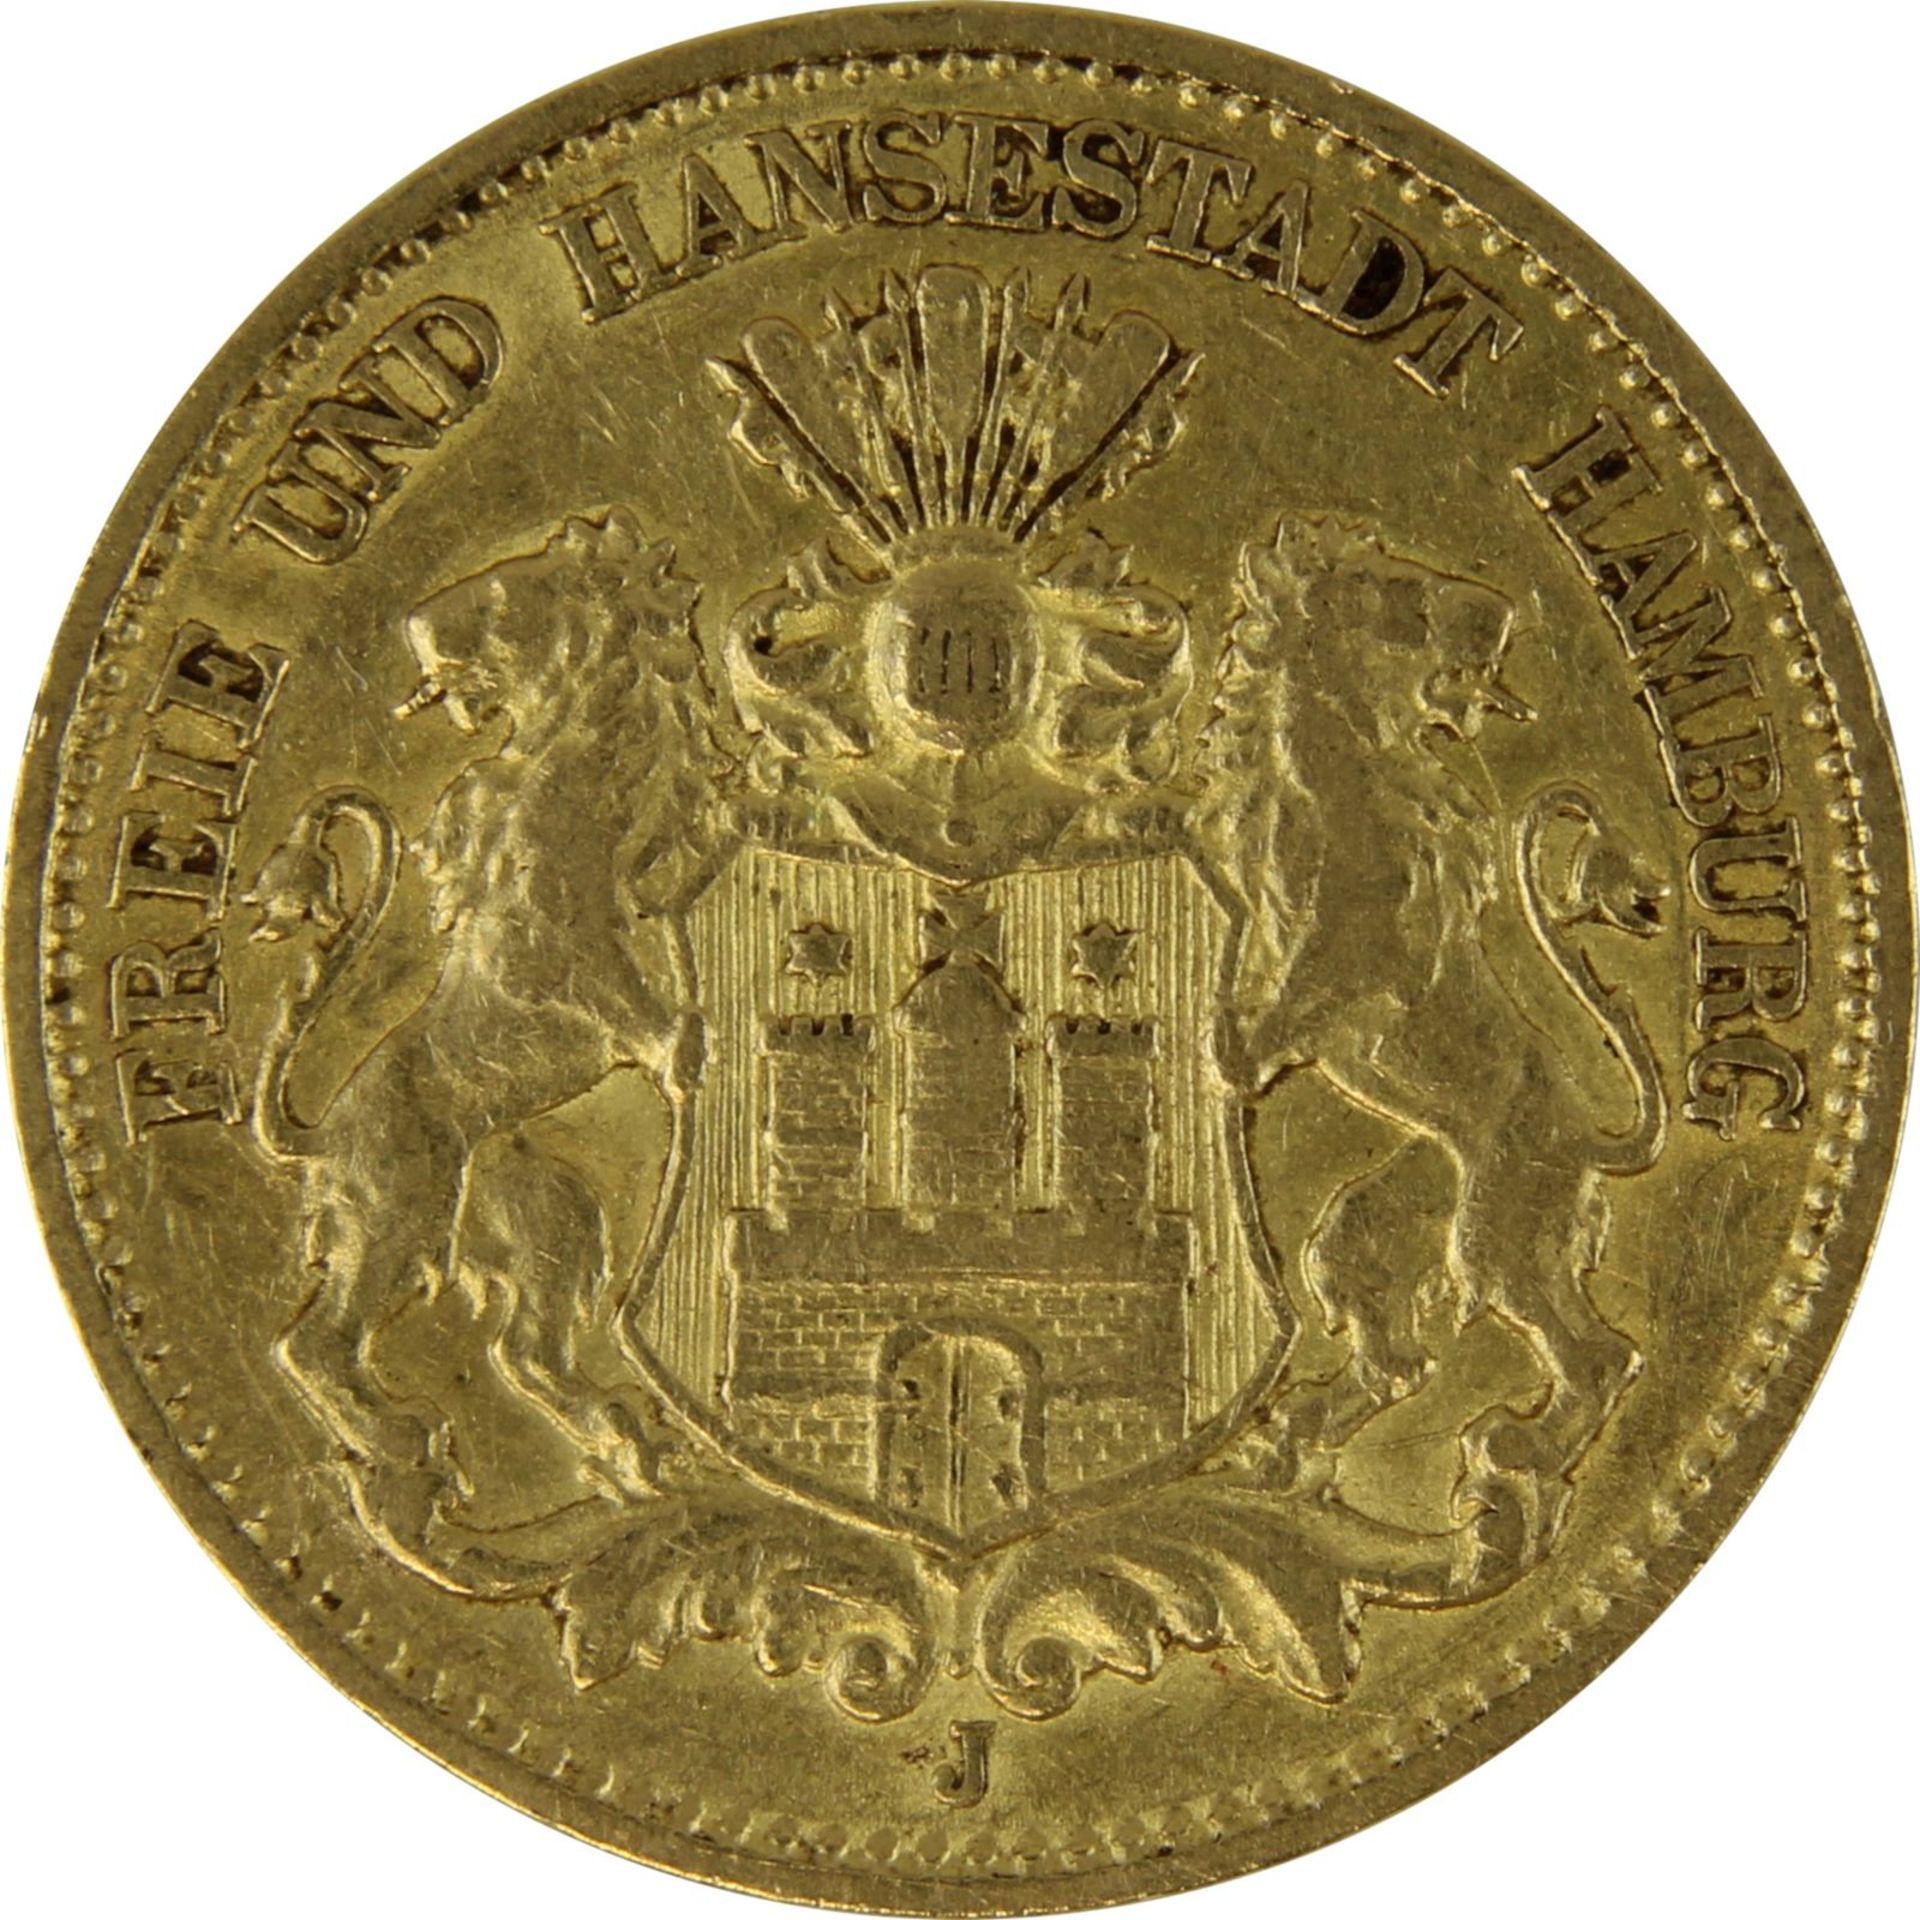 Goldmünze zu 10 Mark, Freie u. Hansestadt Hamburg - Deutsches Reich 1896, Avers: großes - Bild 2 aus 3